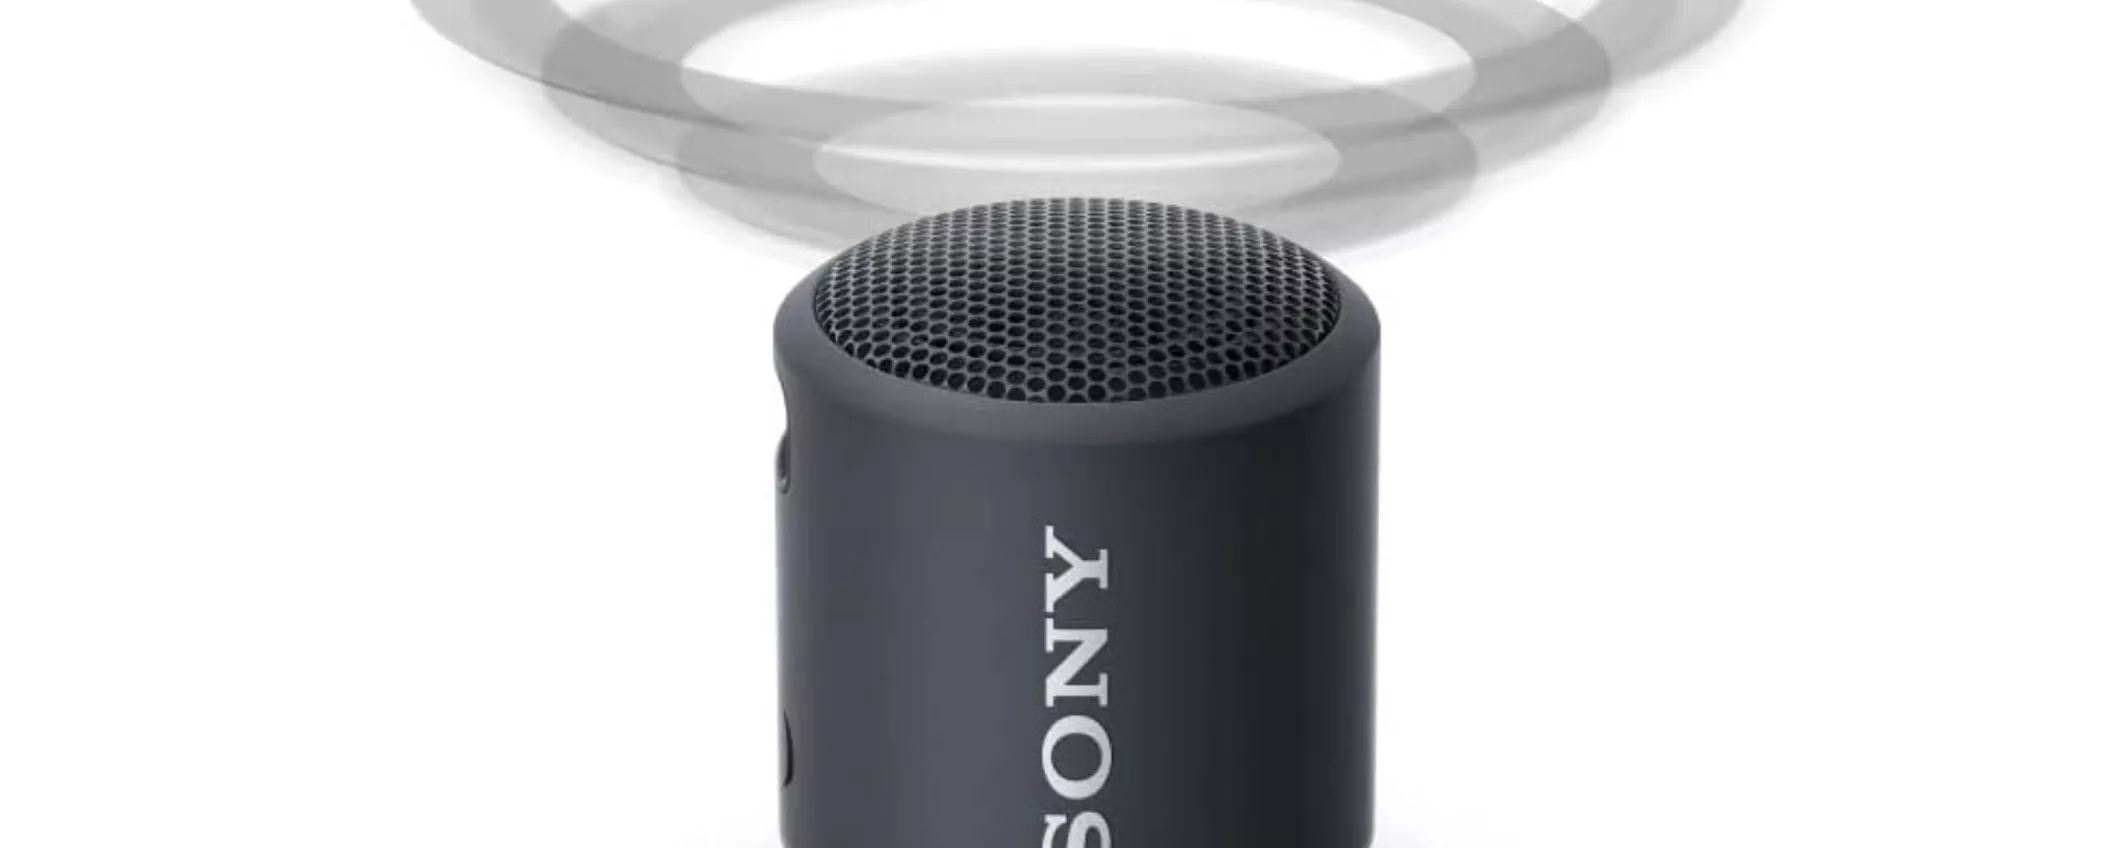 Altoparlante tascabile Sony SRS-XB13 con audio 360 in offerta speciale su Amazon